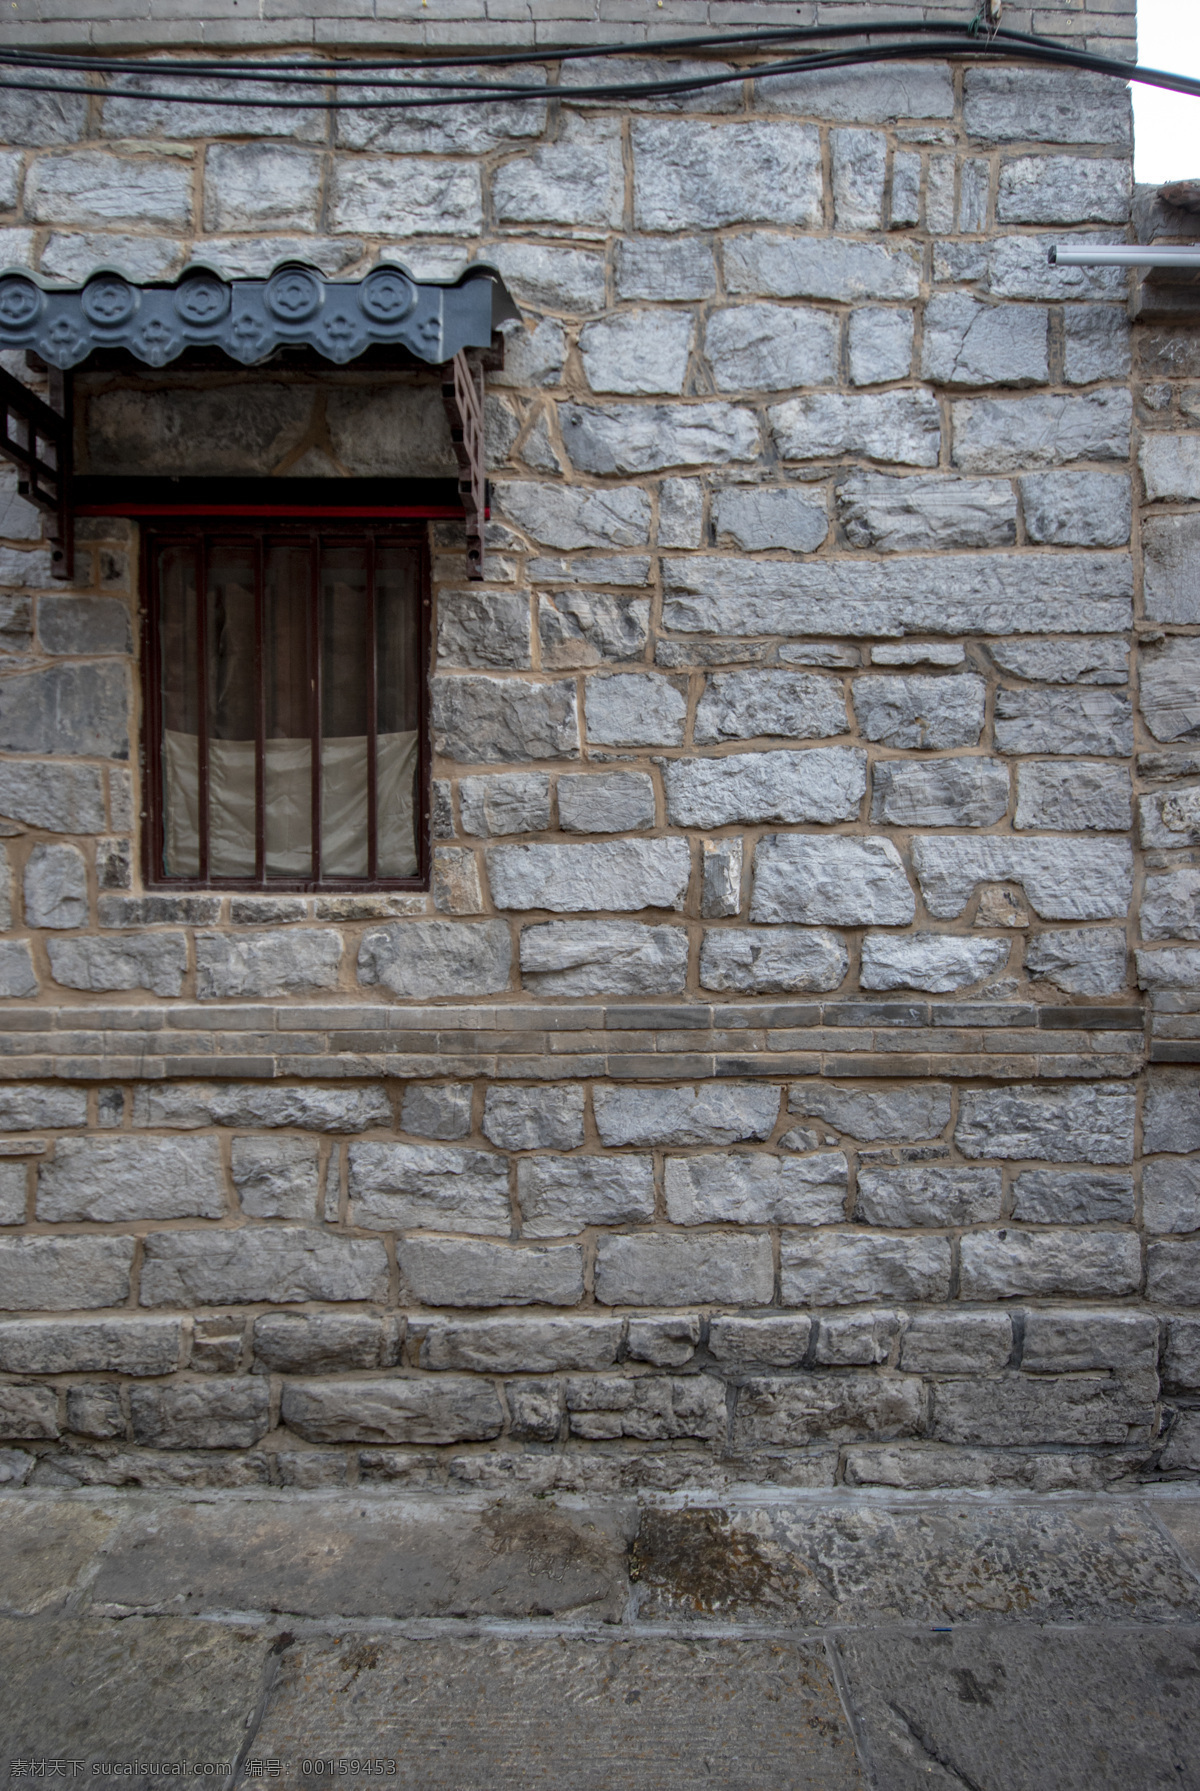 济南石墙图片 济南 中式石砌 石墙 济南建筑 济南石墙 建筑园林 建筑摄影